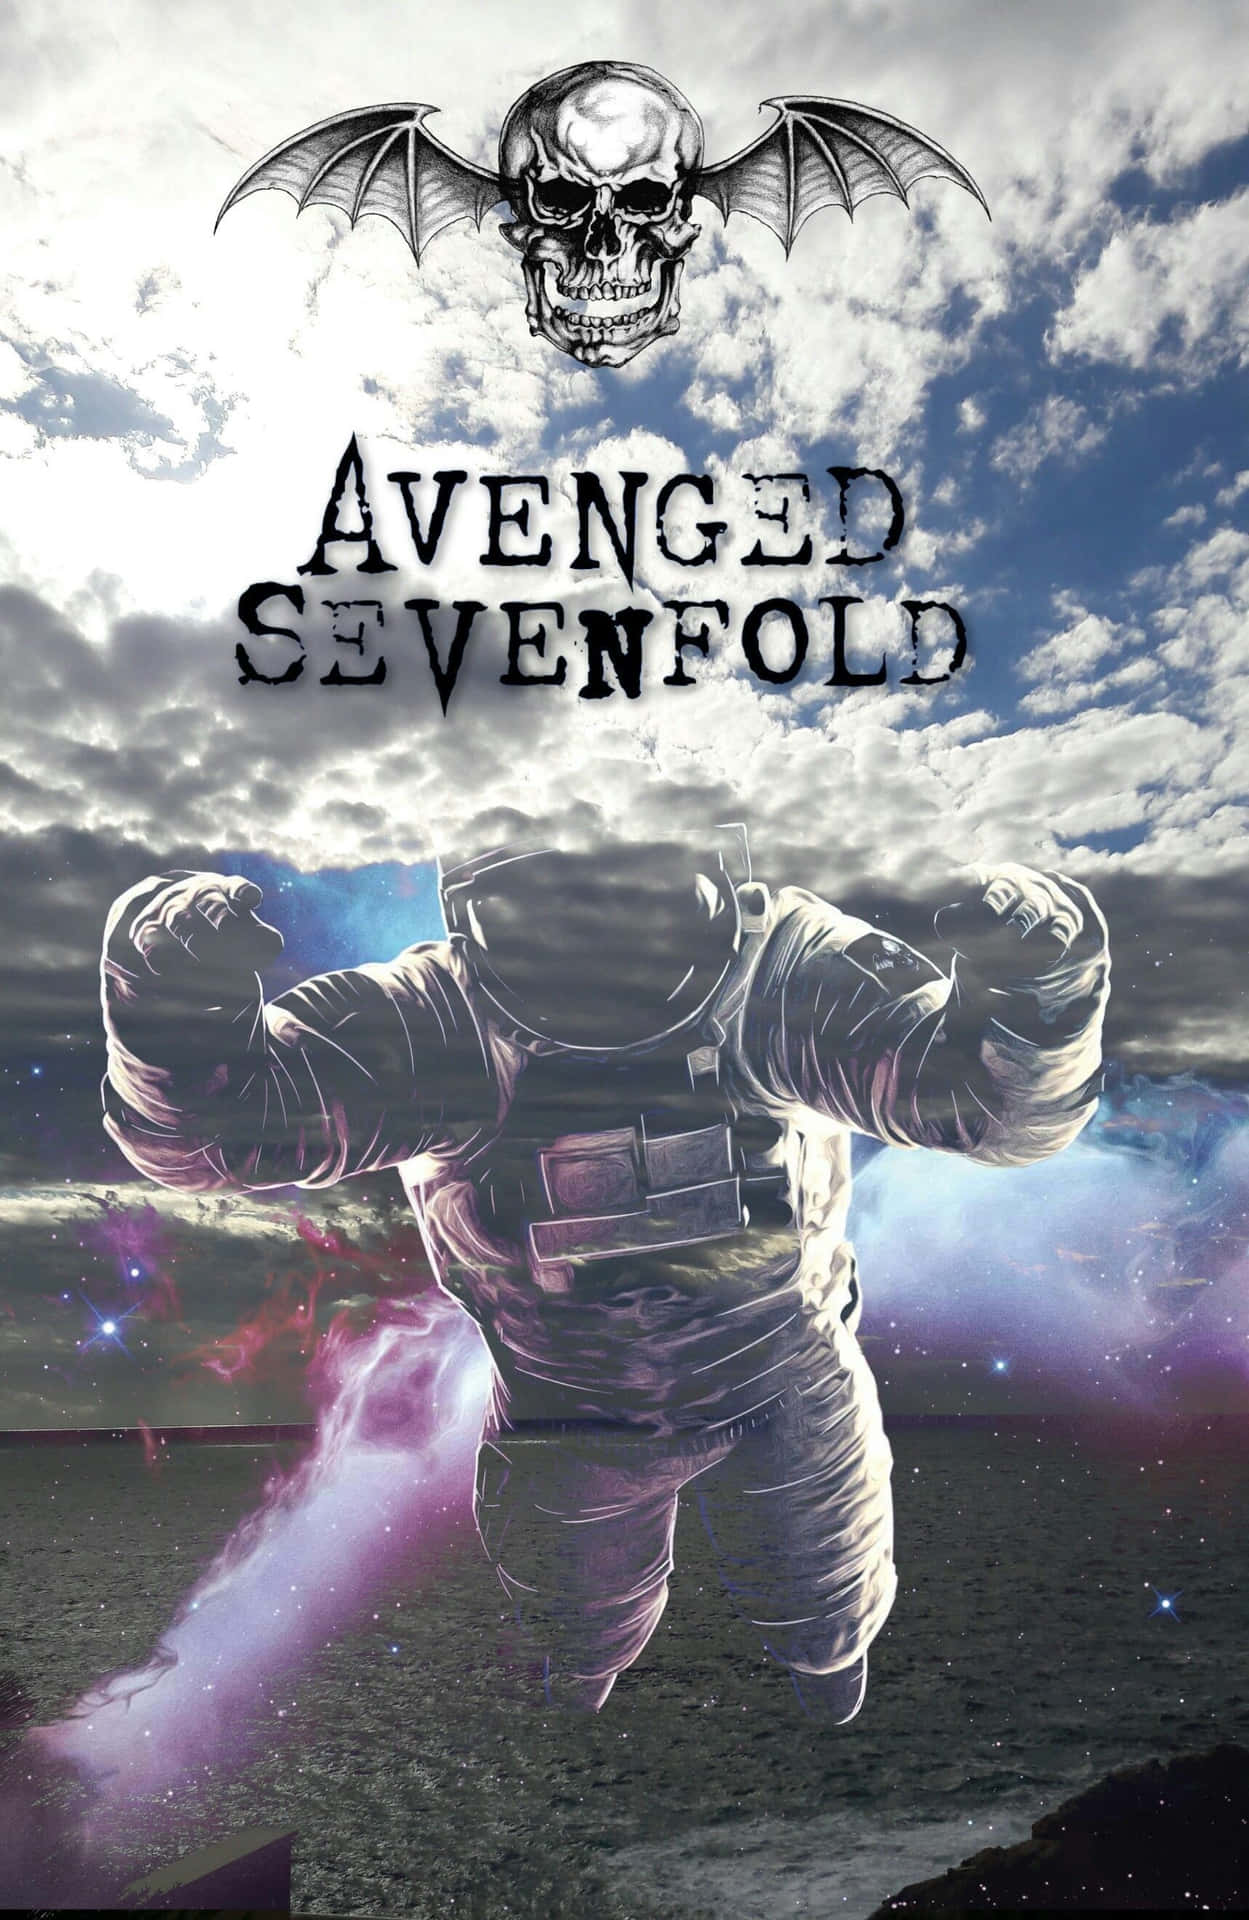 Enbild På Avenged Sevenfold, Det Populära Heavy Metal-bandet. Wallpaper